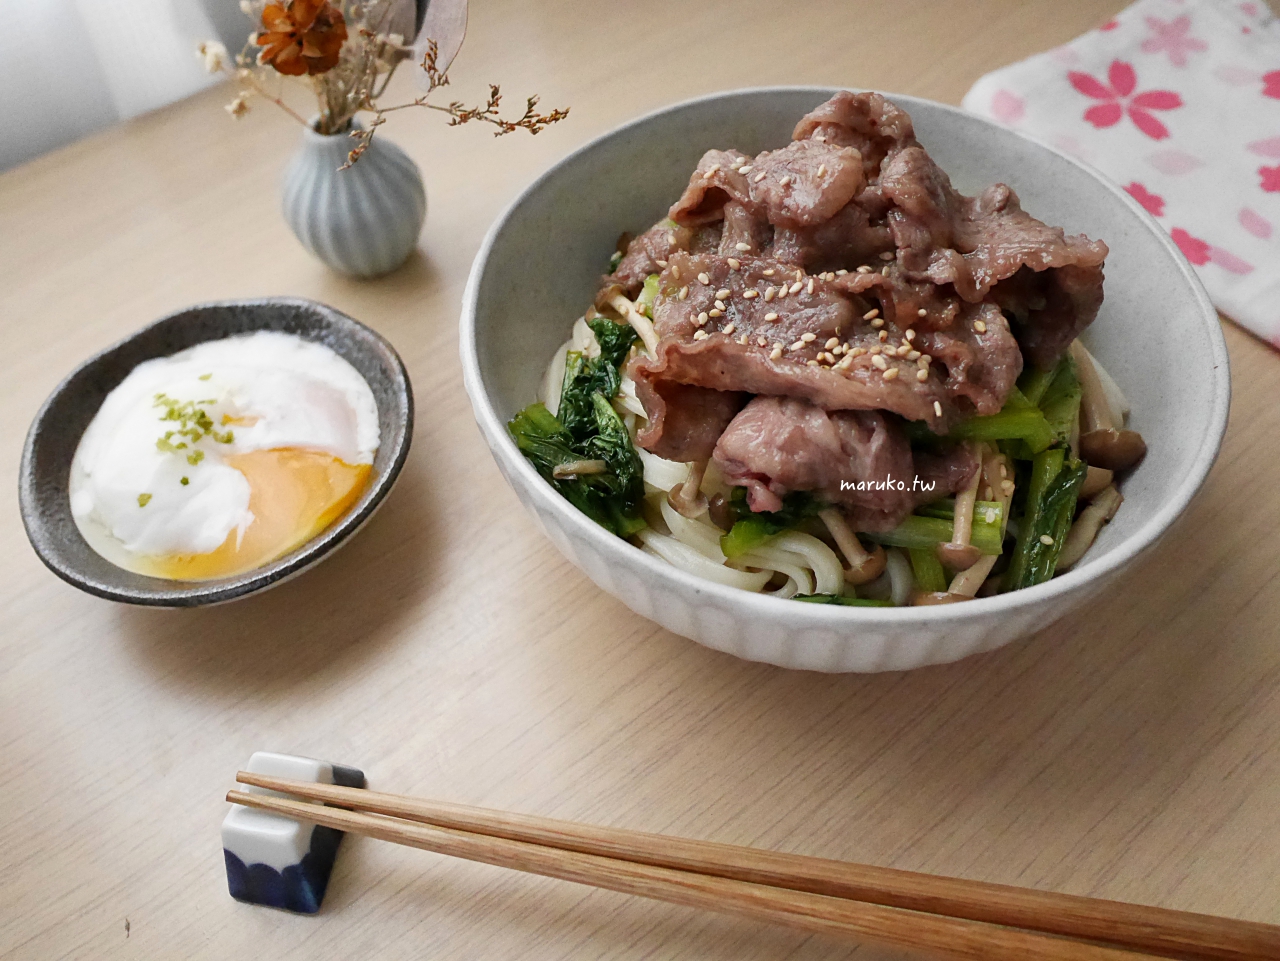 【食譜】壽喜燒烏龍麵 京都風的白糖醬燒肉片做法，一吃就愛上！